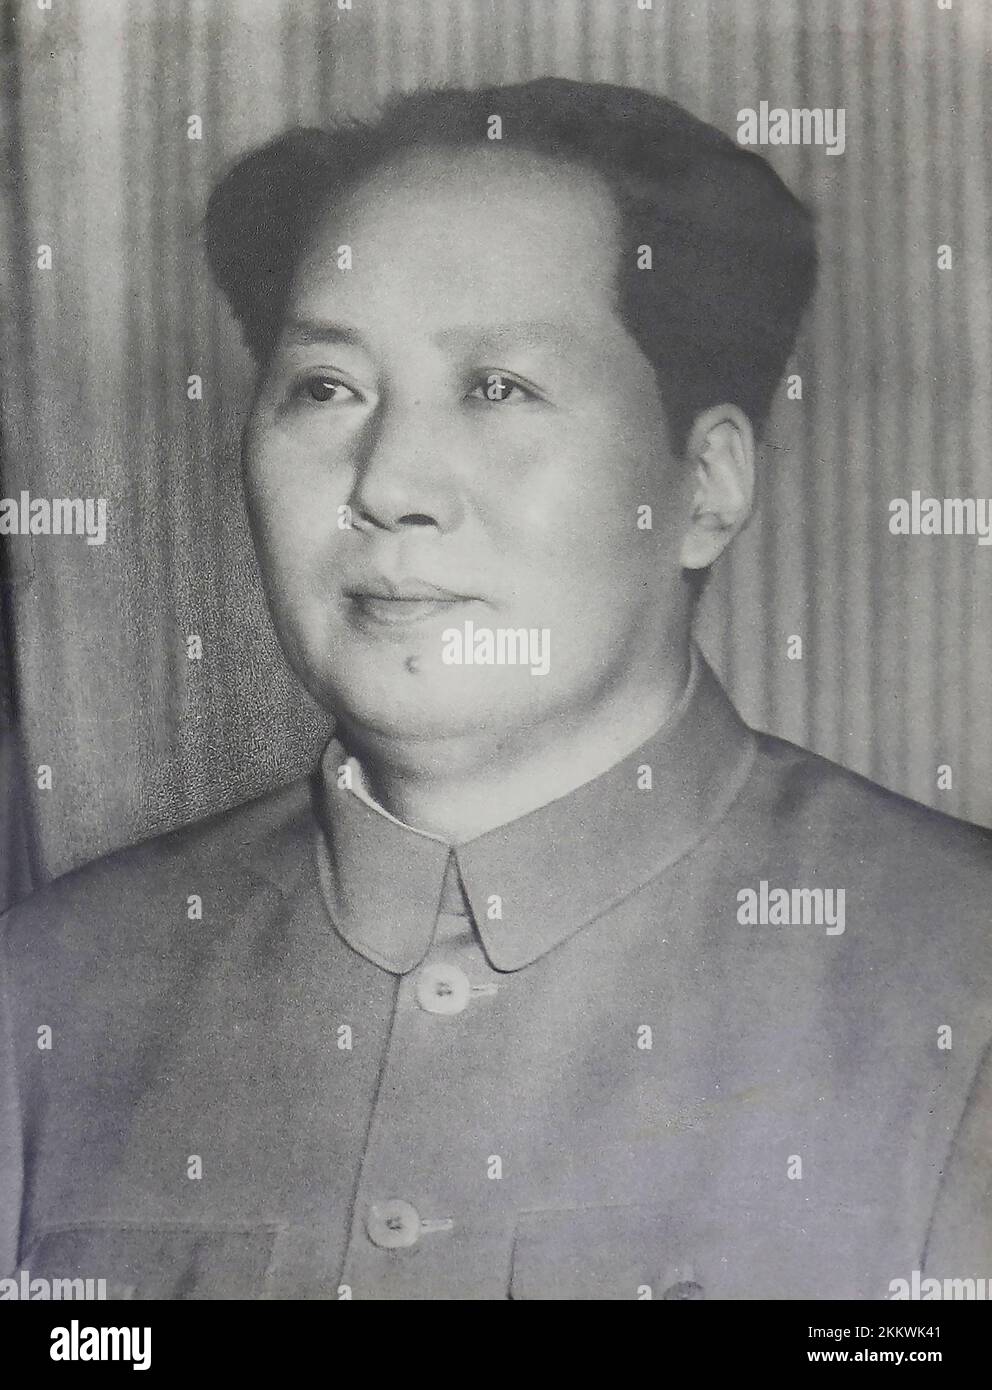 Mao Tsé-toung (1893 – 1976), également connu sous le nom de président Mao, était un révolutionnaire communiste chinois qui devint le père fondateur de la République populaire de Chine (RPC), qu'il a dirigé en tant que président du Parti communiste chinois de sa création en 1949 jusqu'à sa mort en 1976. Idéologiquement un marxiste–léniniste, ses théories, ses stratégies militaires et ses politiques sont collectivement connus sous le nom de maoïsme. Banque D'Images